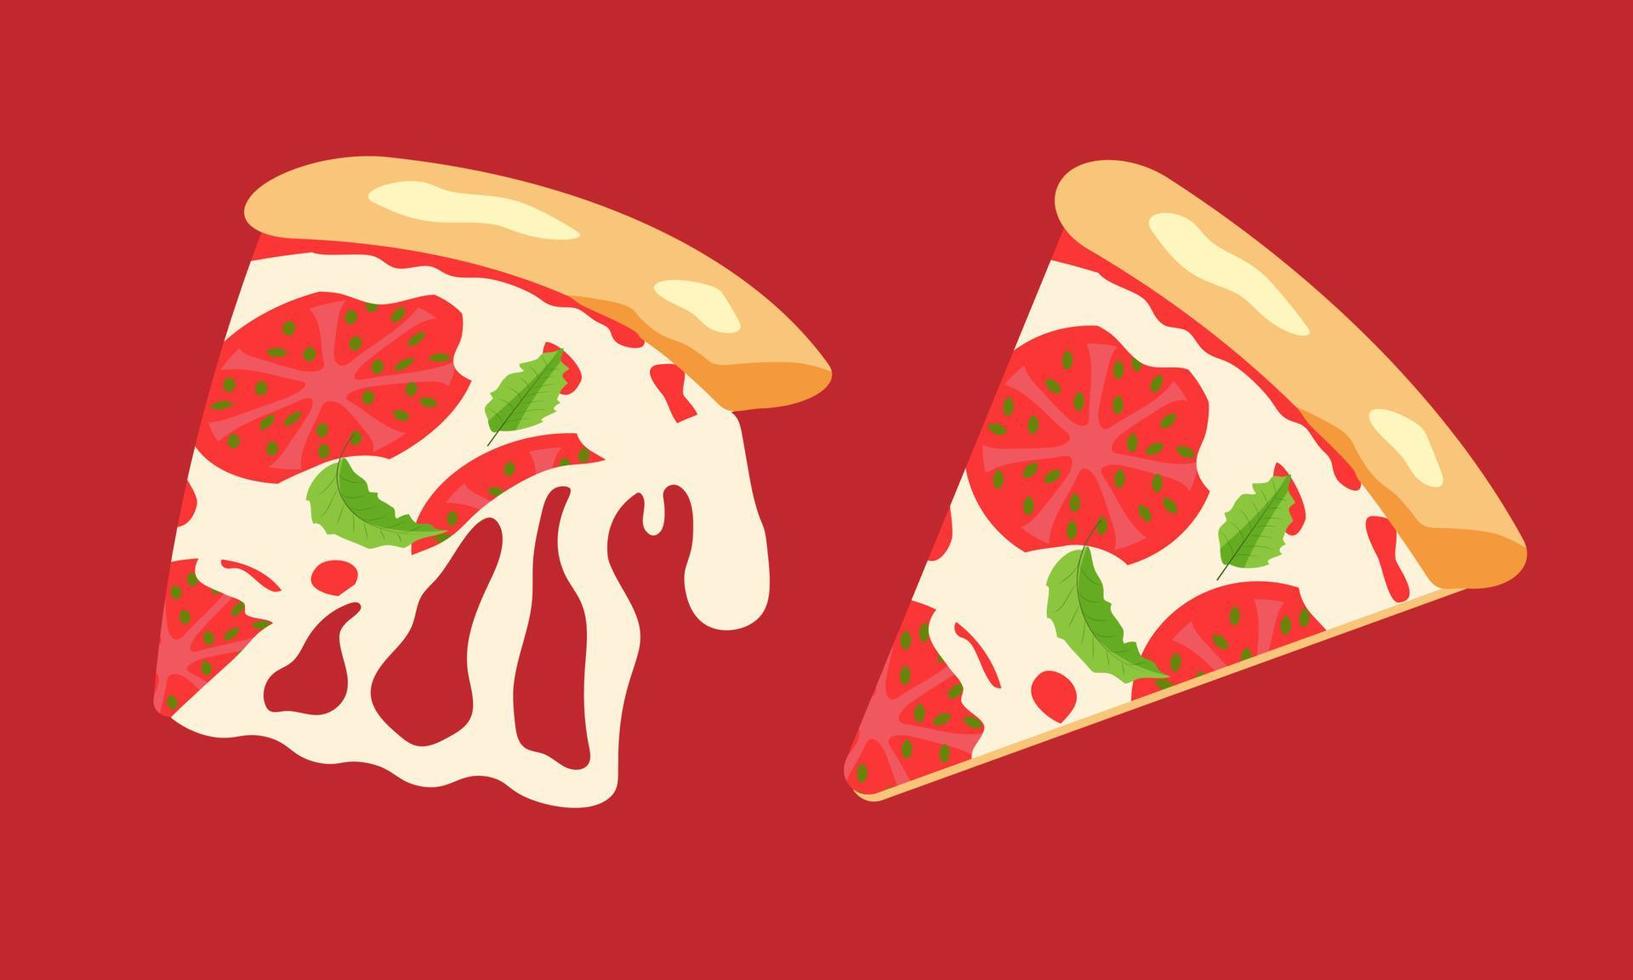 deux morceaux de délicieuse pizza margarita. illustration de la restauration rapide. vecteur eps10